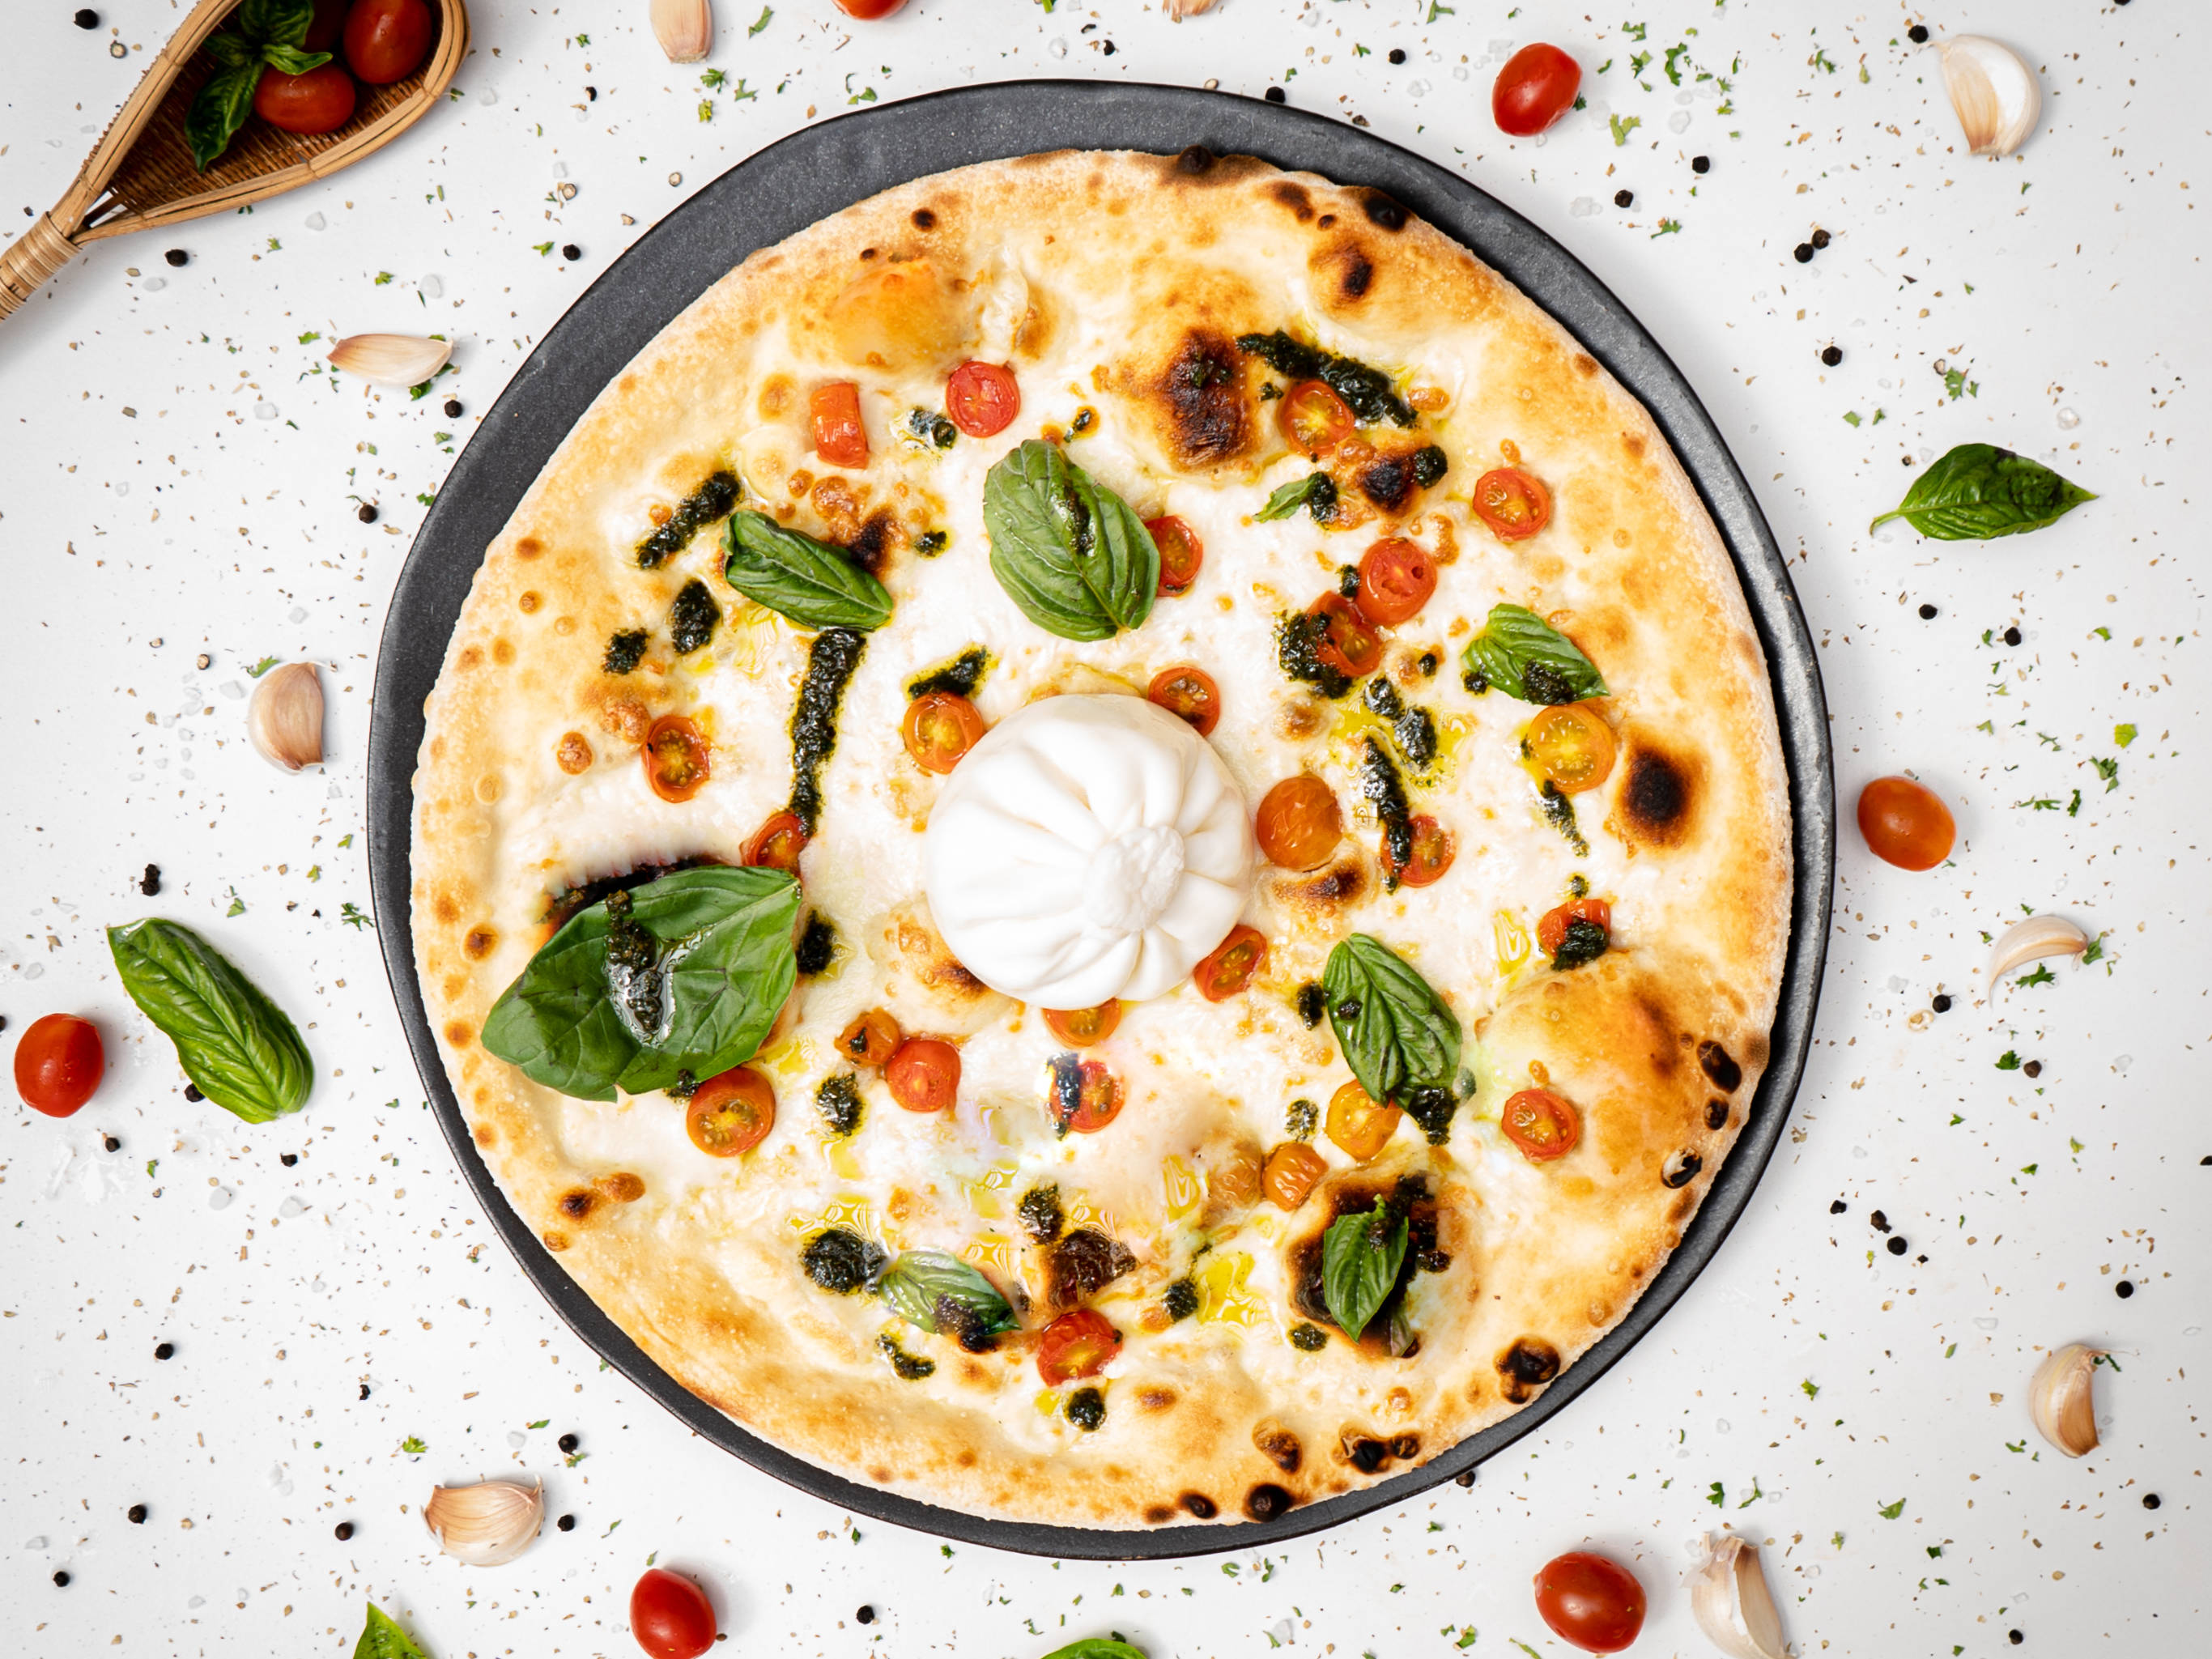 Signature Dish: White Pizza With Whole Burrata